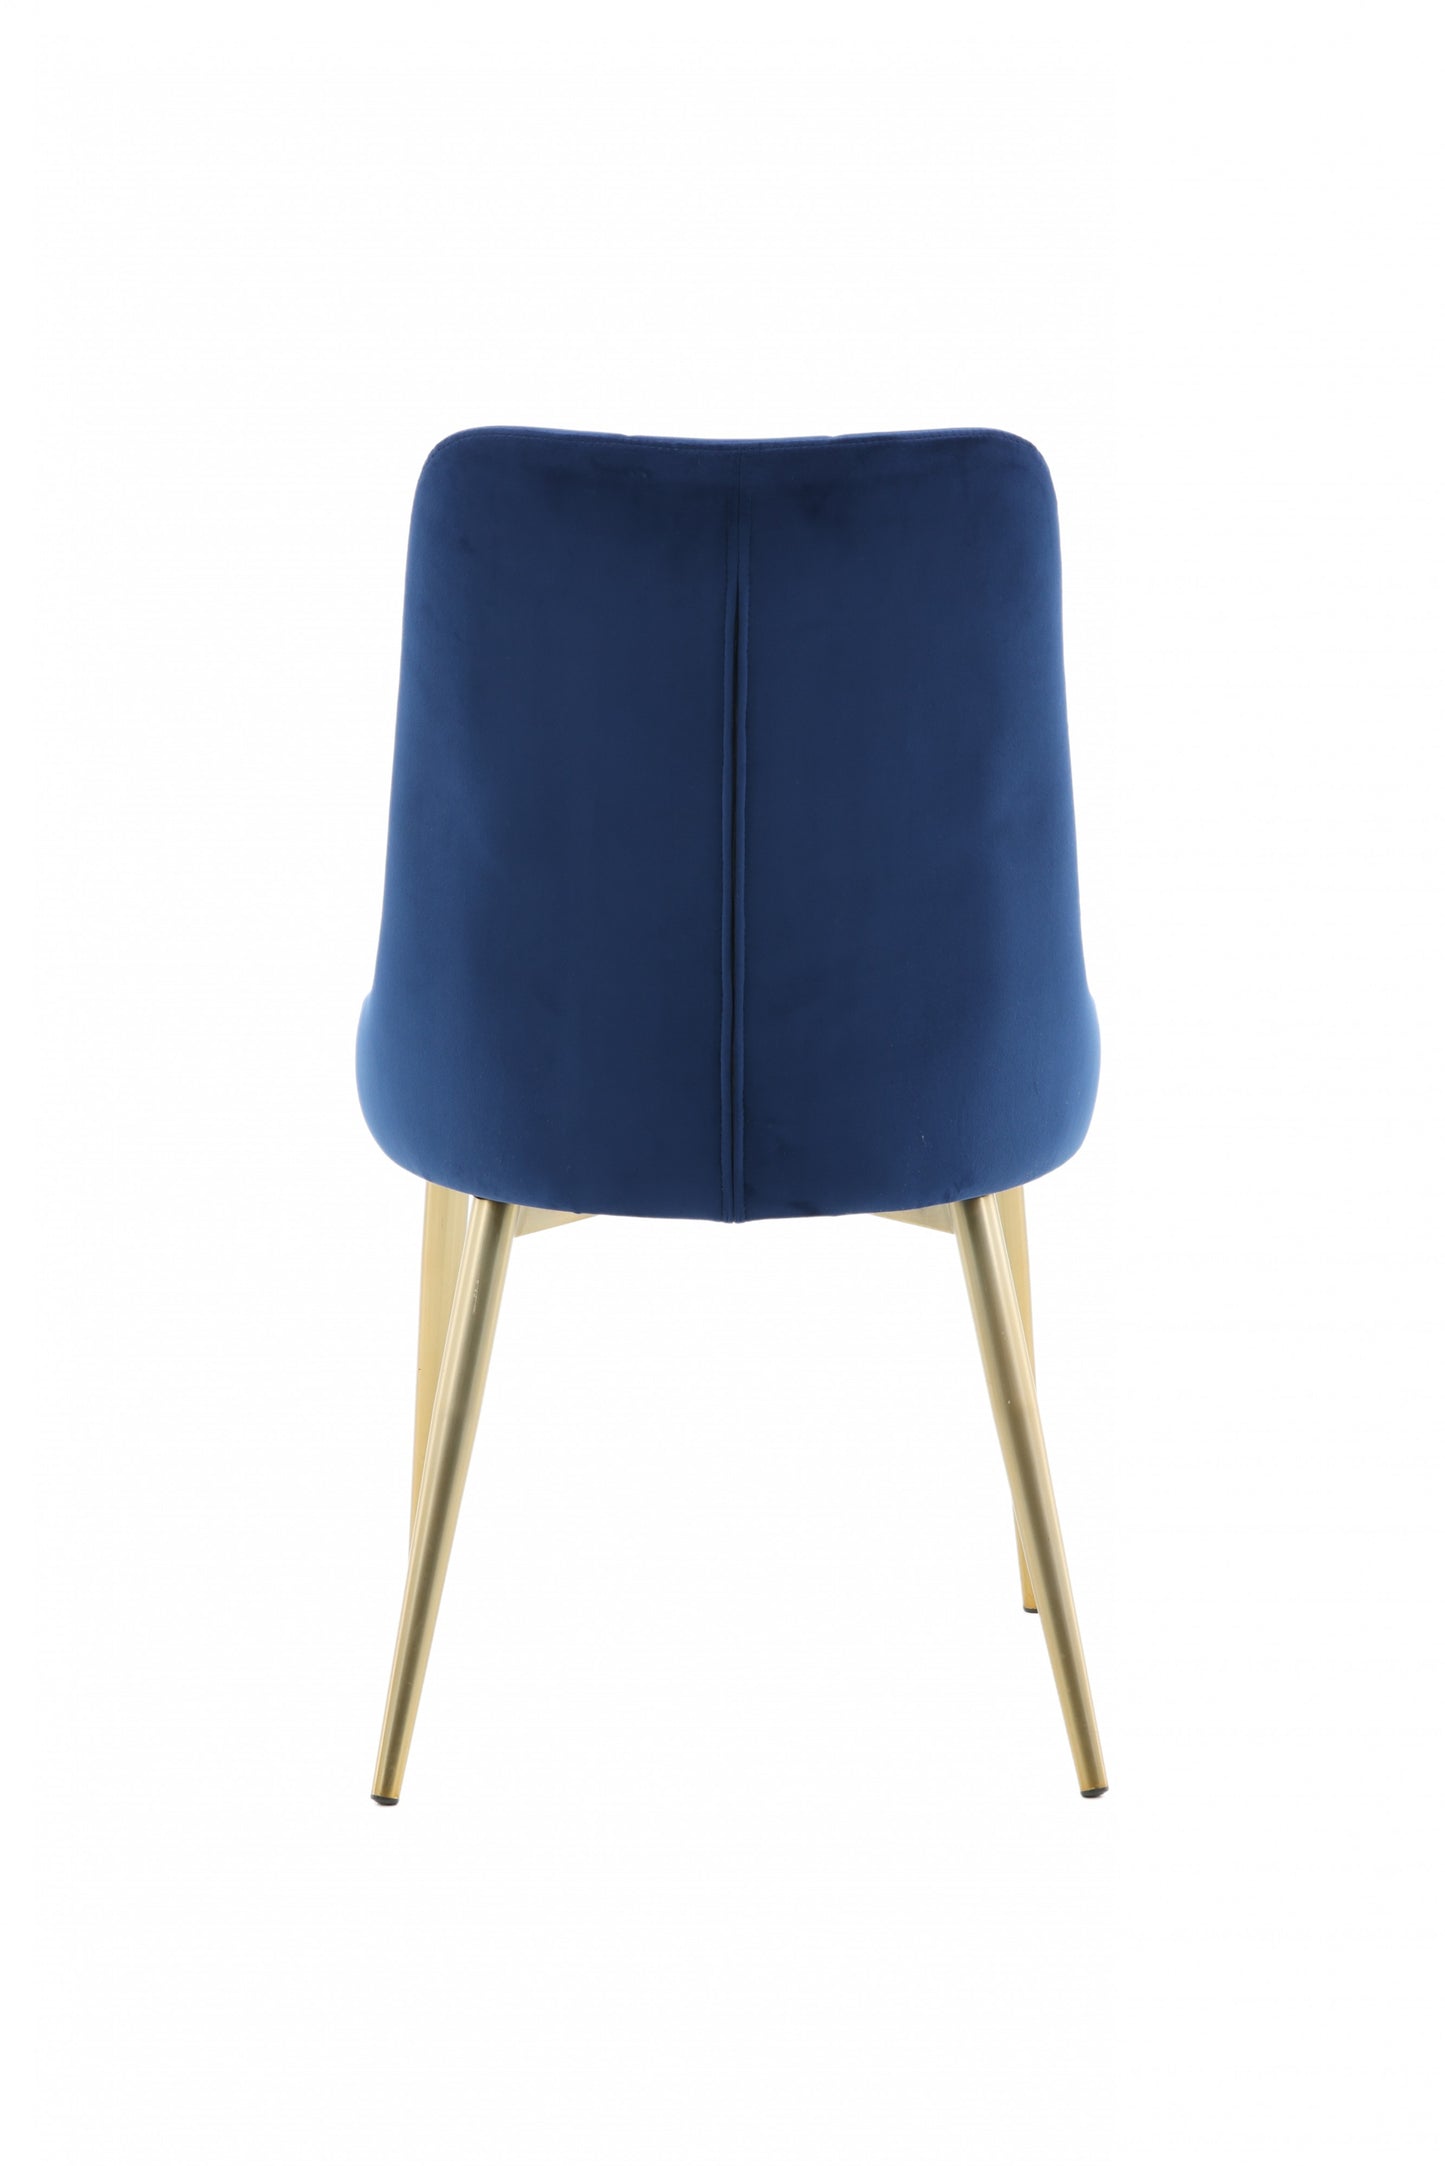 Venture-Design | Deluxe Stuhl aus Velours - Beine aus blauem/mattiertem Messing